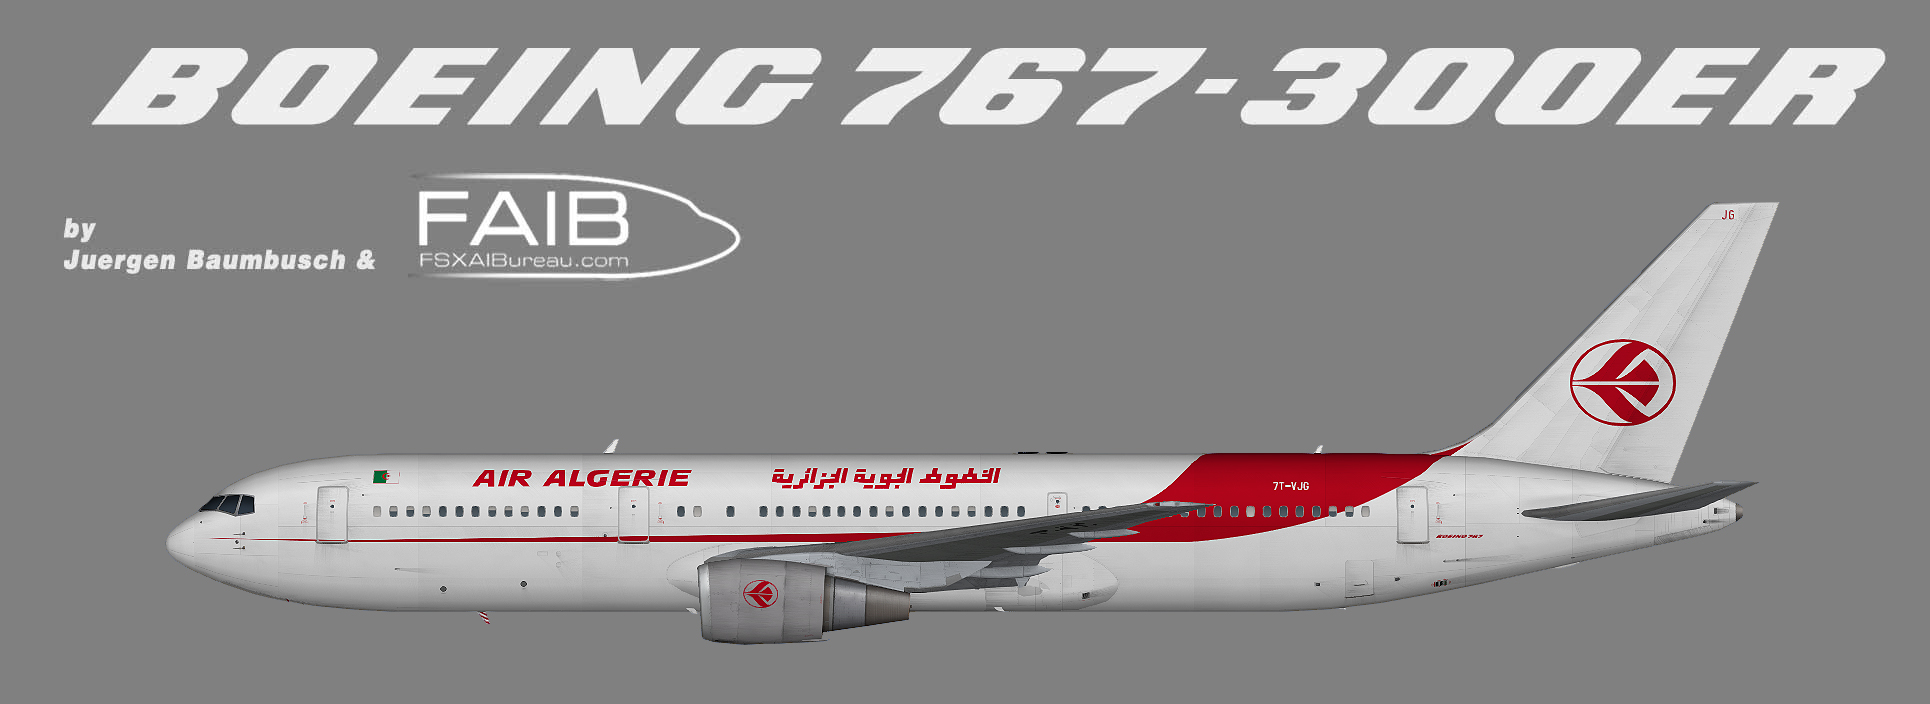 737 600 air algerie fsx